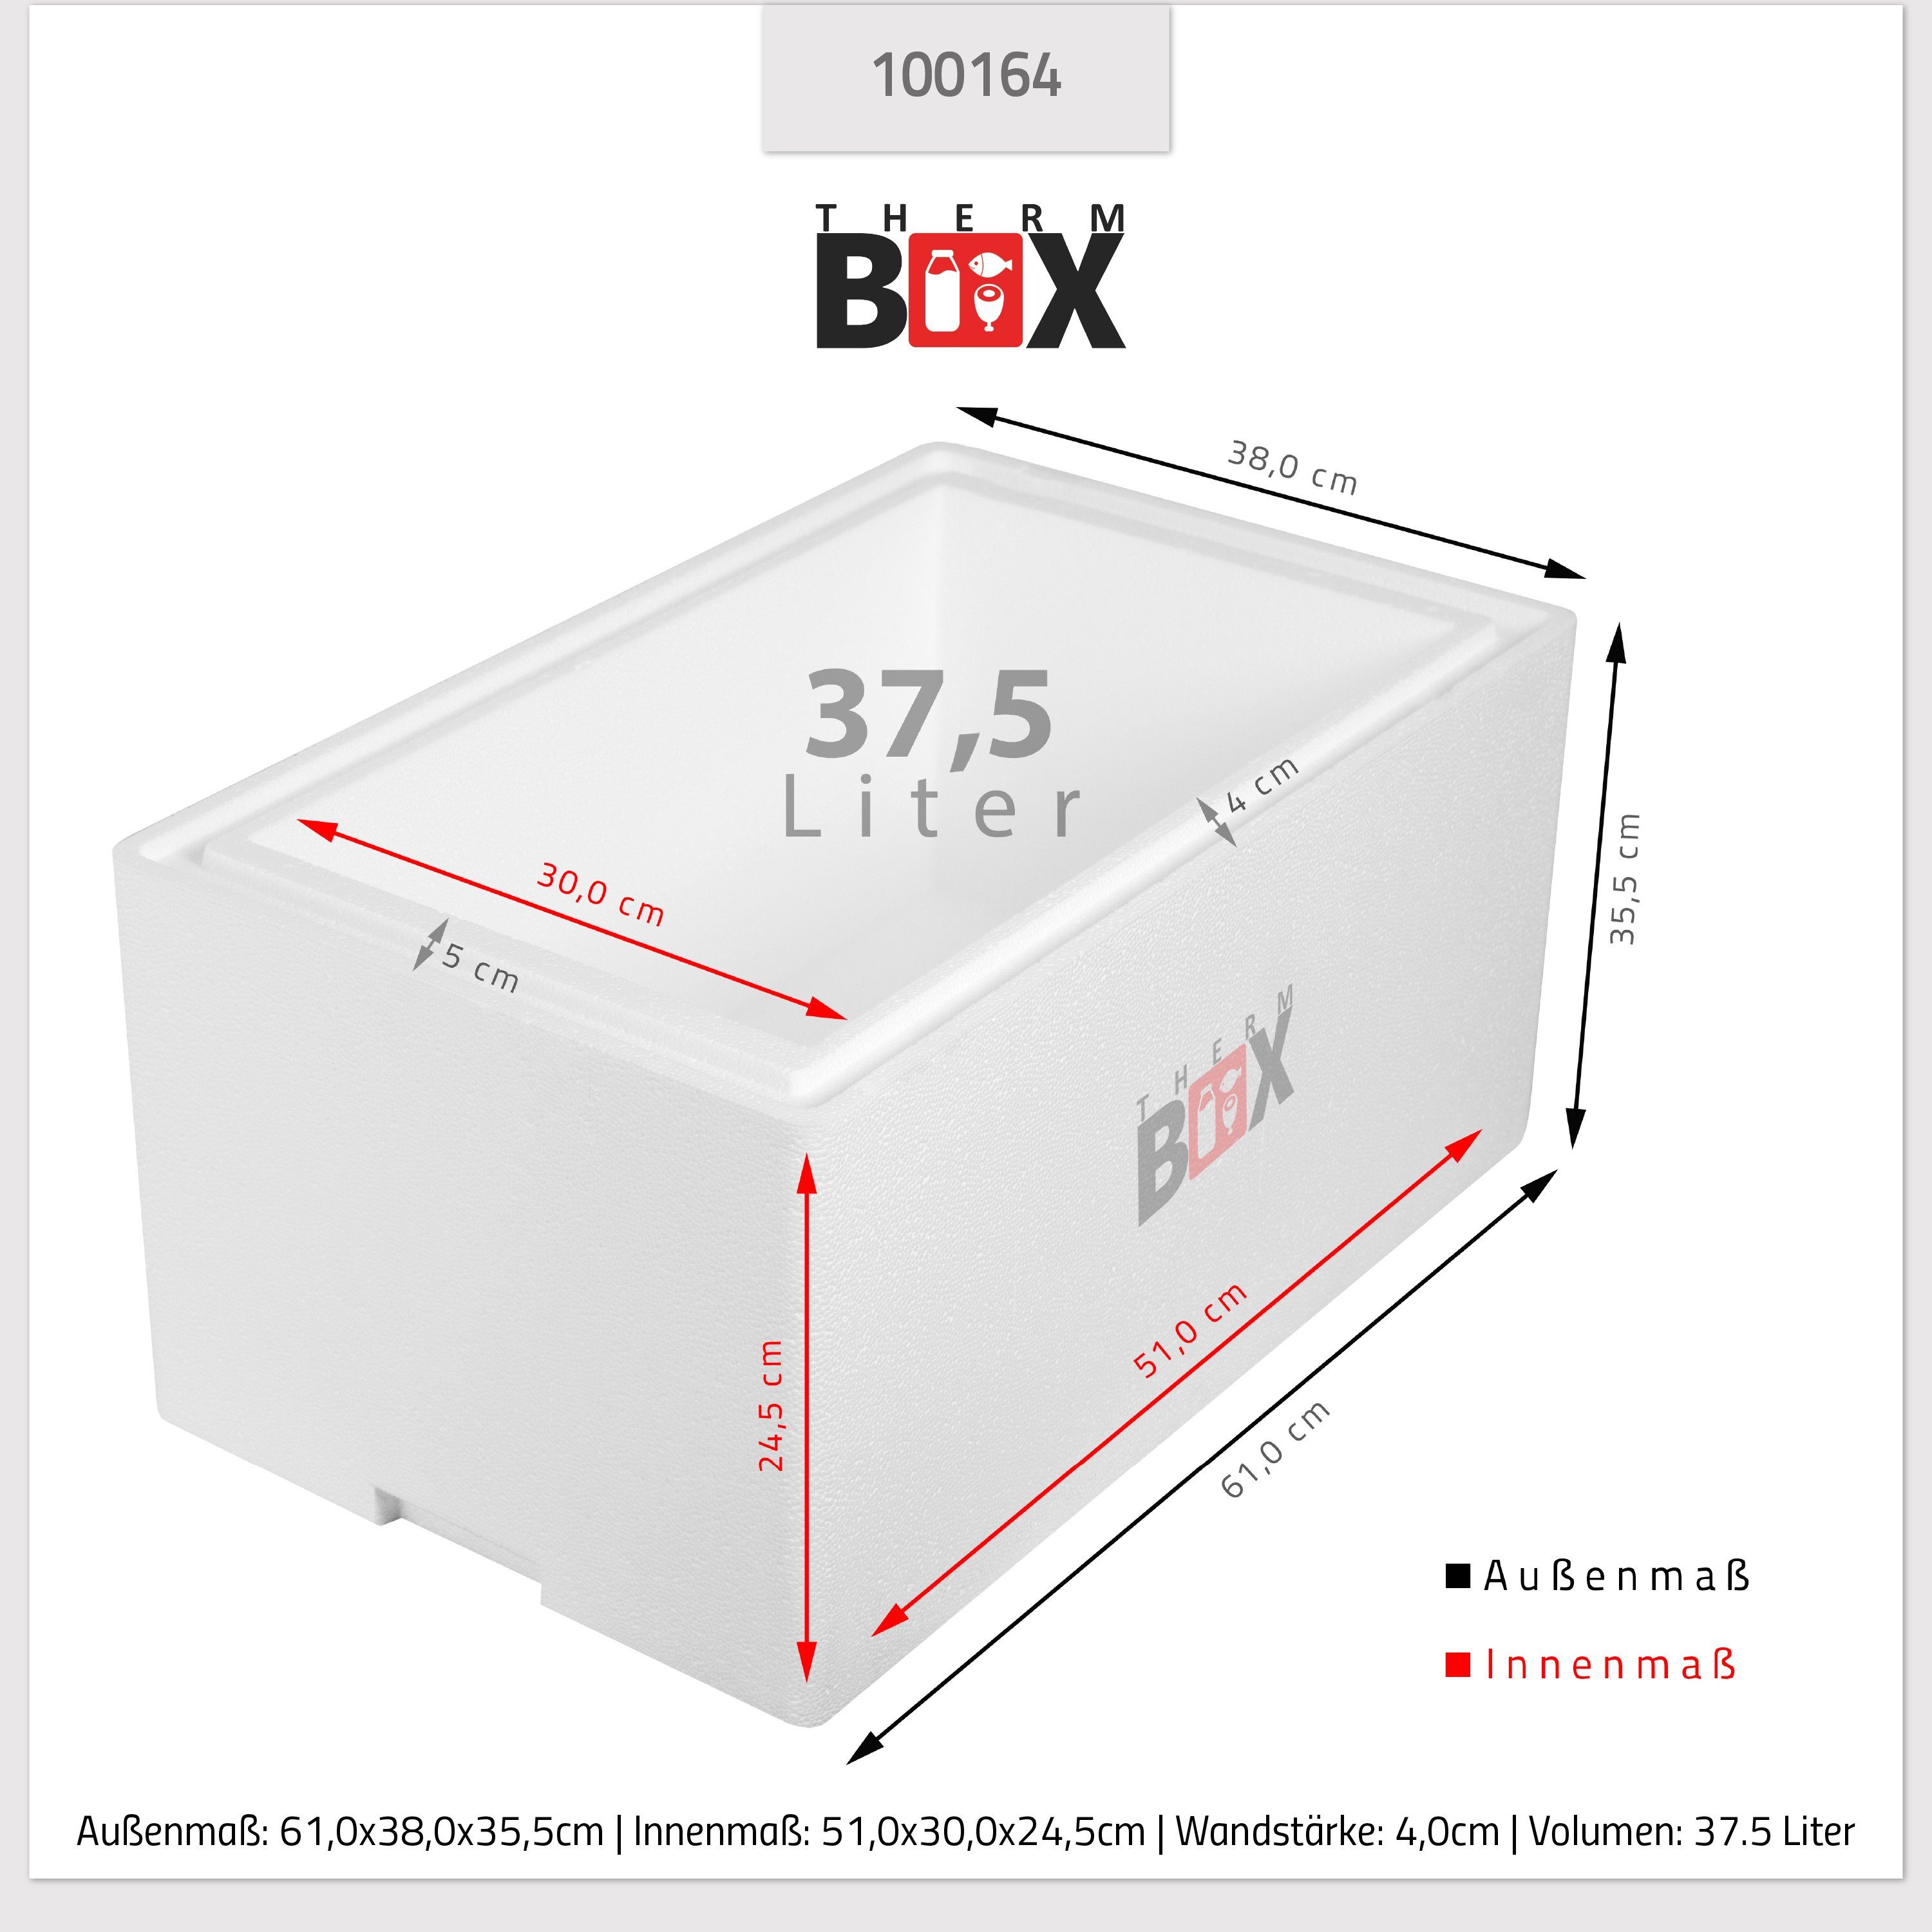 37W Wiederverwendbar Box Warmhaltebox 37,5L, 0-tlg., Thermobox Kühlbox Isolierbox THERM-BOX Styroporbox Thermobehälter Styropor-Verdichtet, 51x30x24cm Innen: Karton), (1, mit im Wand: Deckel 4cm